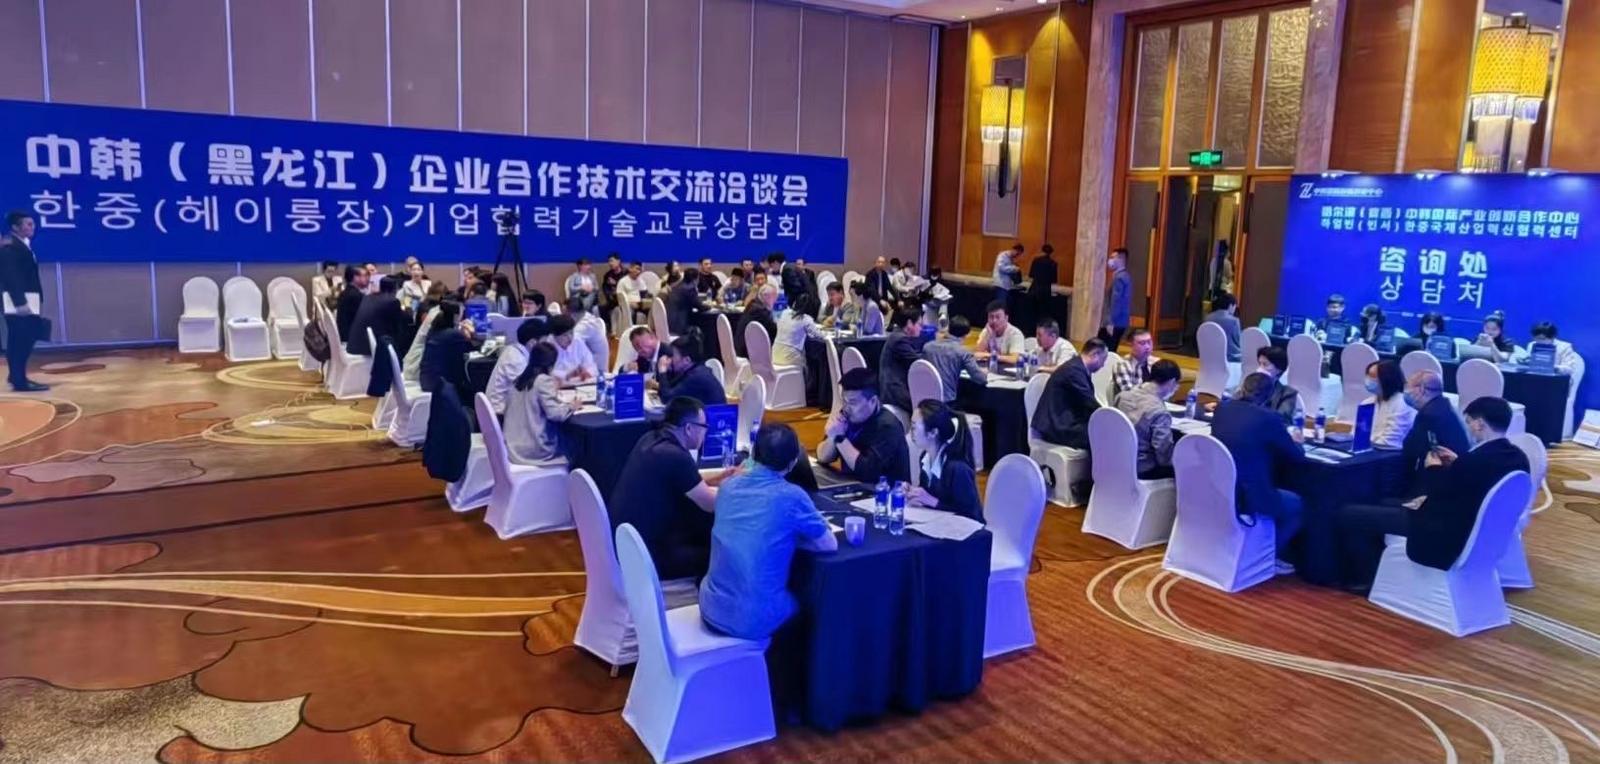 중국과 한국 기업 Longjiang 3개가 함께 투자하고 협력하여 상생하는 미래를 위해